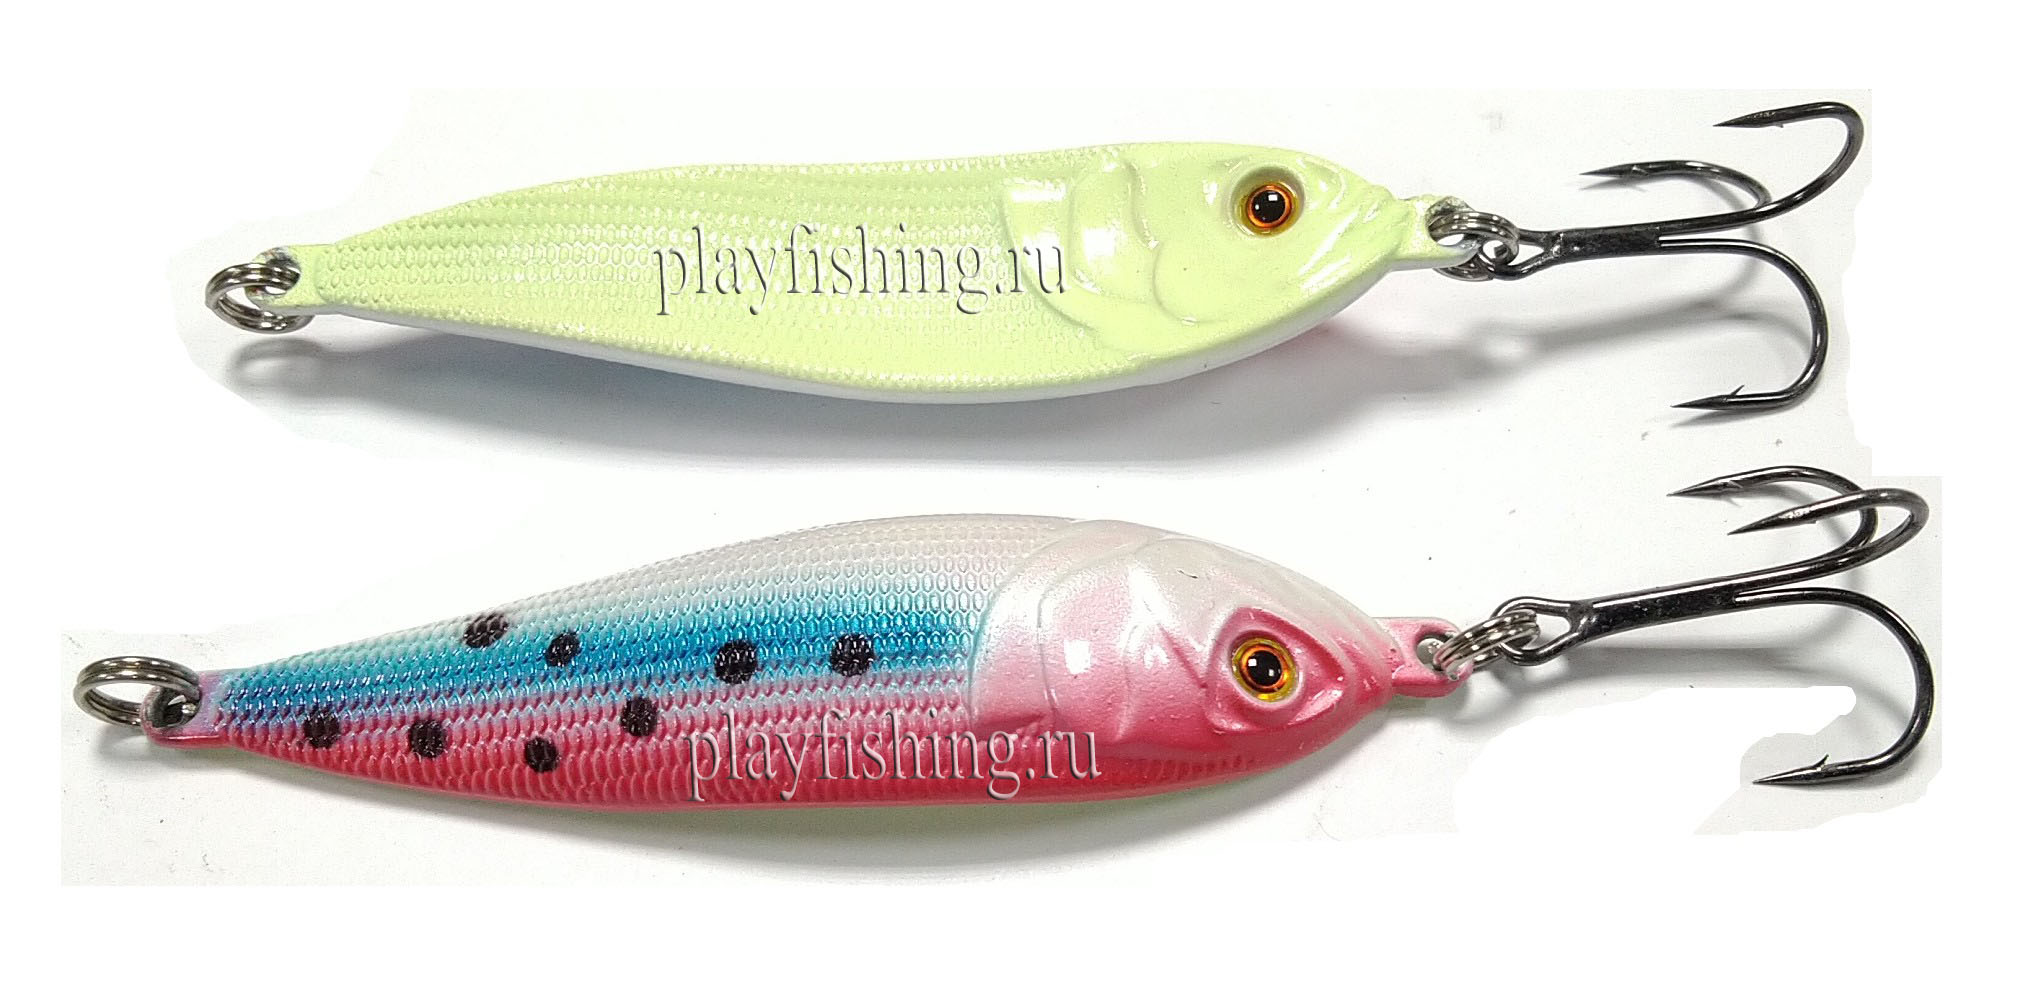  Playfishing